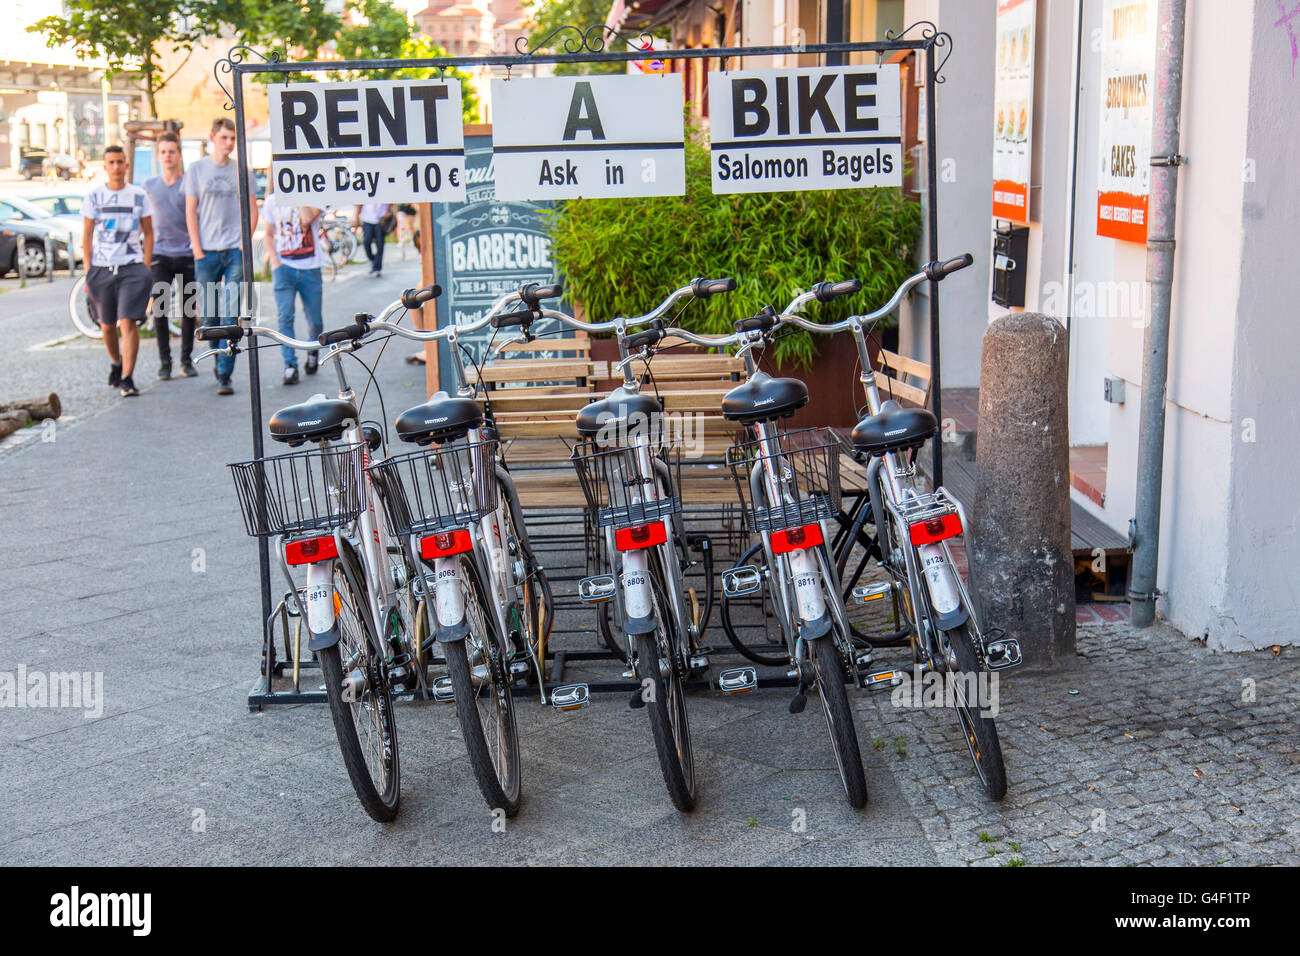 Louer un vélo Banque de photographies et d'images à haute résolution - Alamy